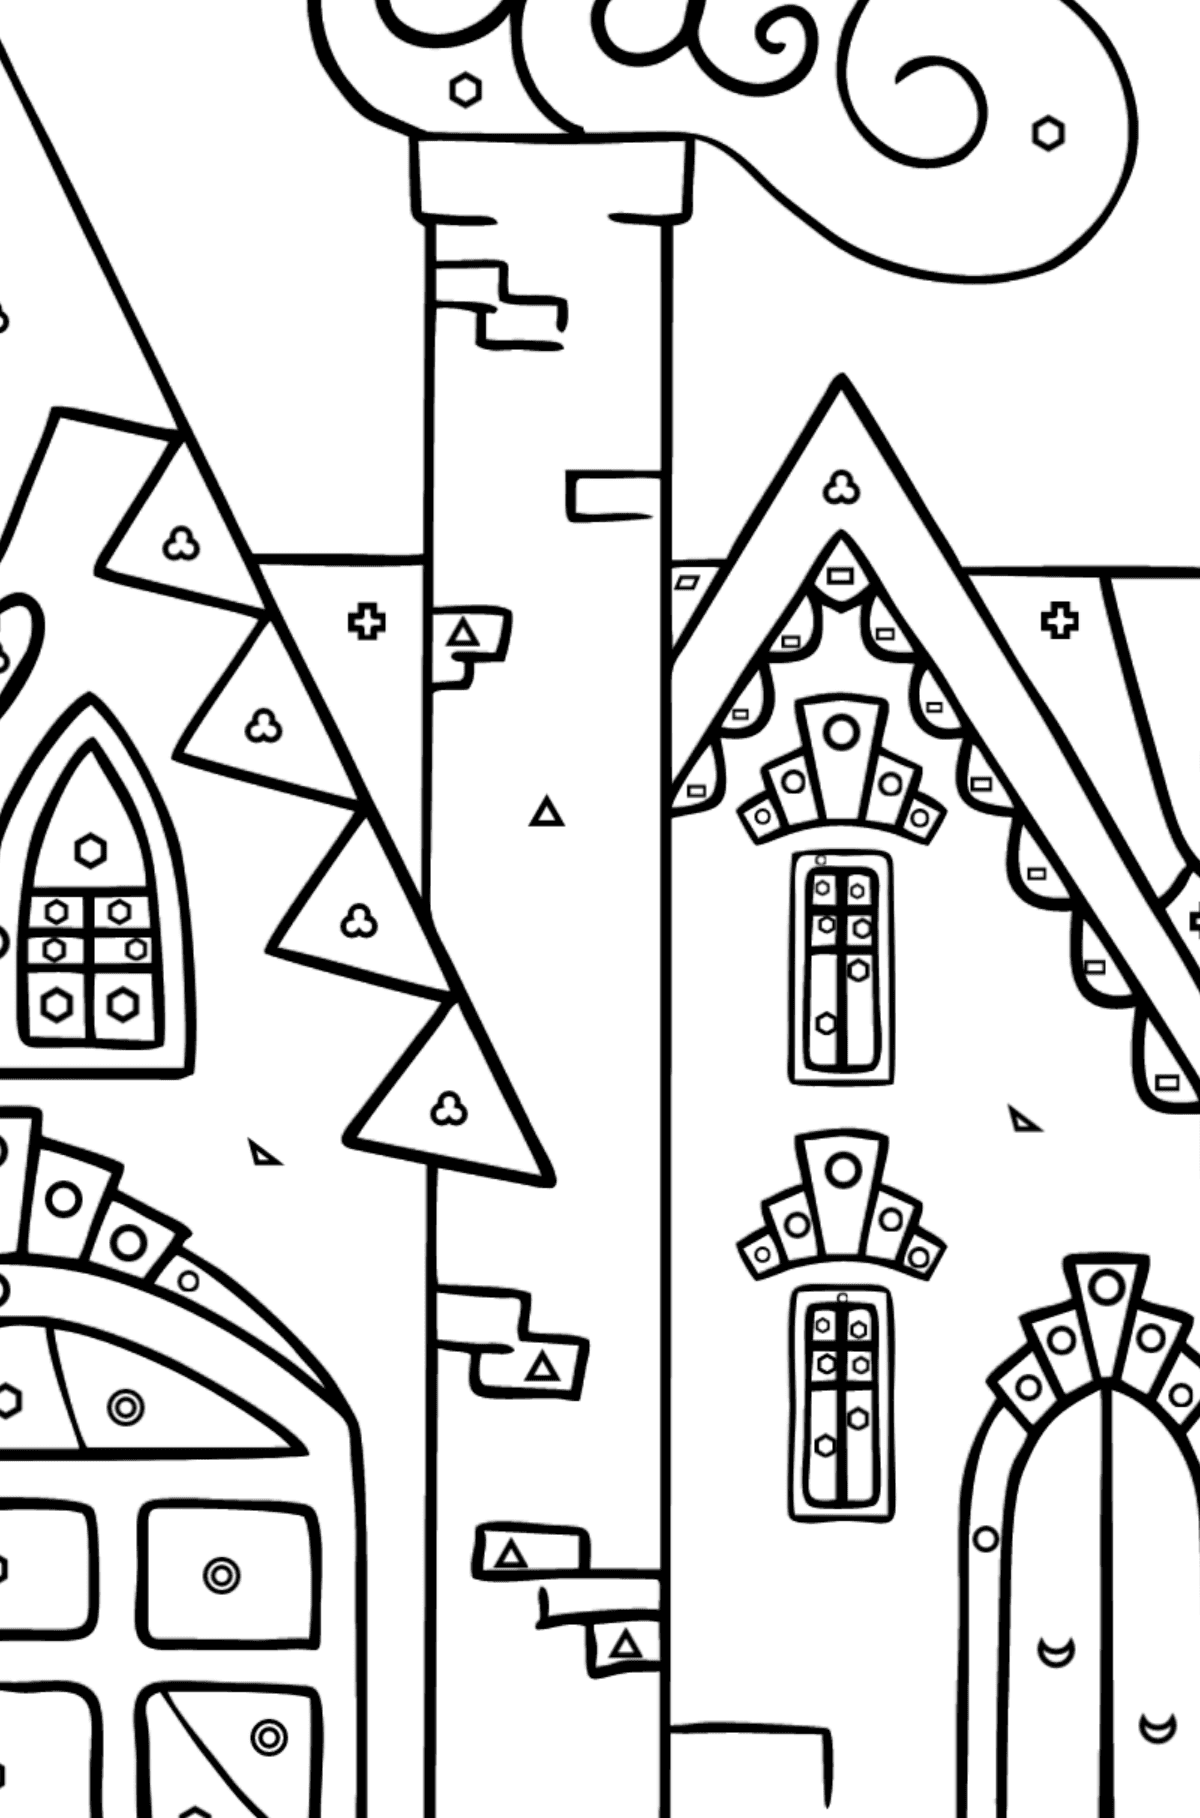 Czarujący dom kolorowanka (trudna) - Kolorowanie według figur geometrycznych dla dzieci